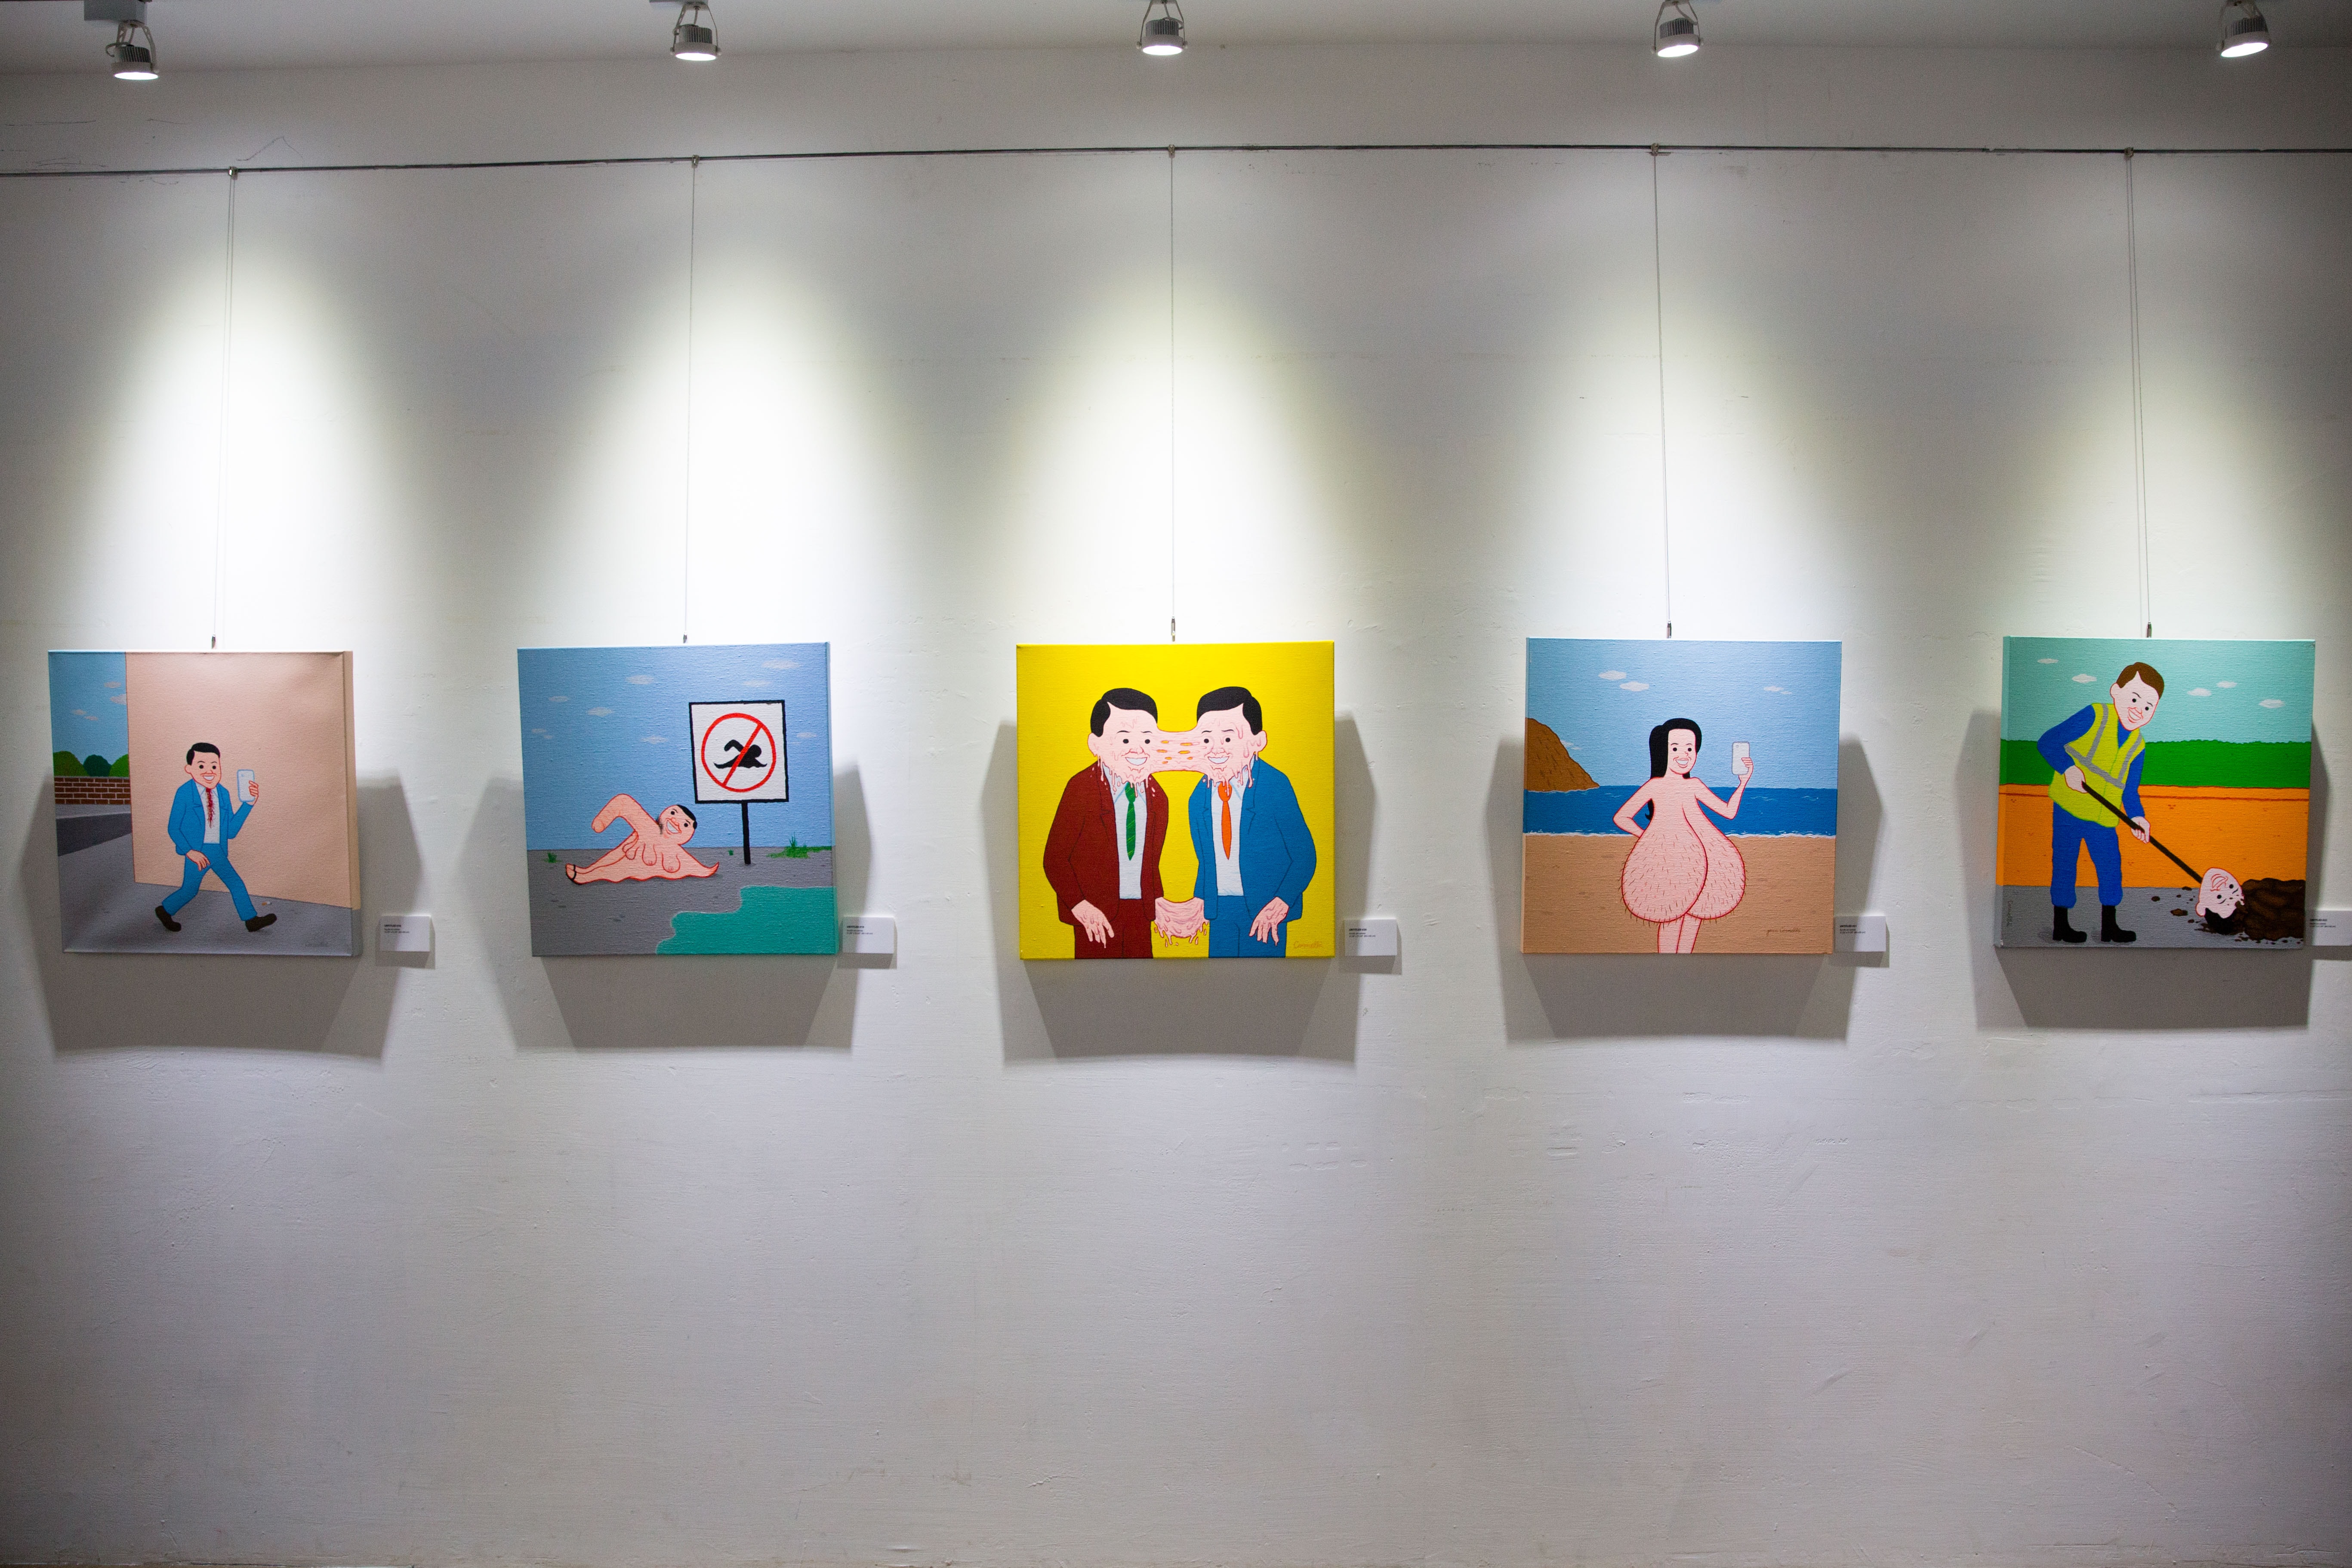 Joan Cornellà interview at Joan Cornellà: A Solo Exhibition Taipei opening event